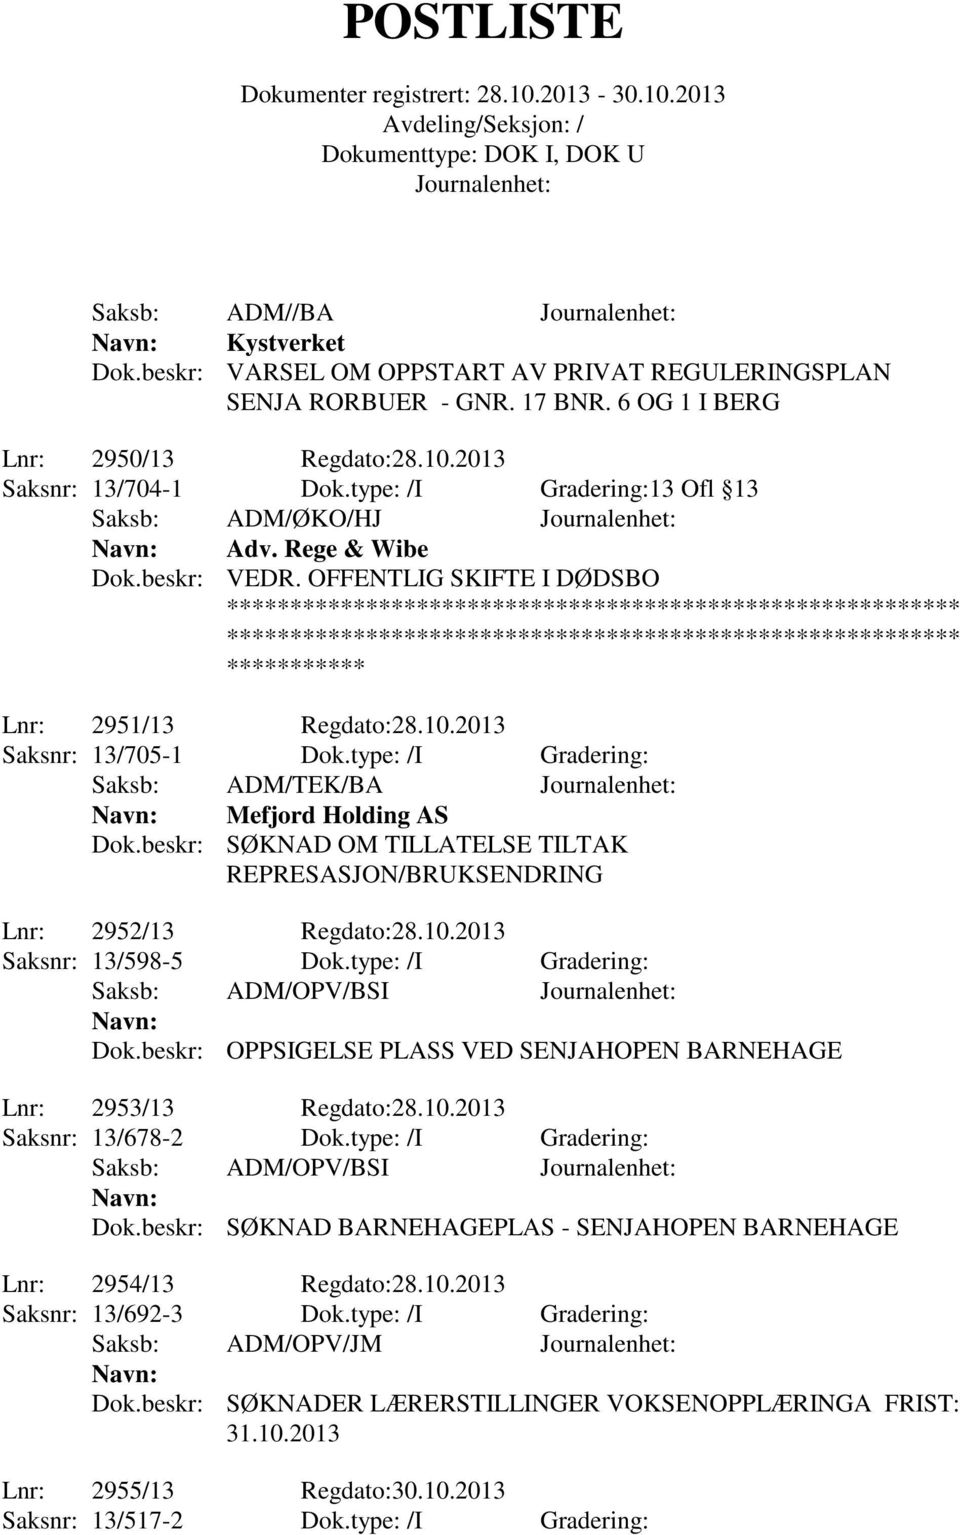 type: /I Gradering: Saksb: ADM/TEK/BA Mefjord Holding AS Dok.beskr: SØKNAD OM TILLATELSE TILTAK REPRESASJON/BRUKSENDRING Lnr: 2952/13 Regdato:28.10.2013 Saksnr: 13/598-5 Dok.